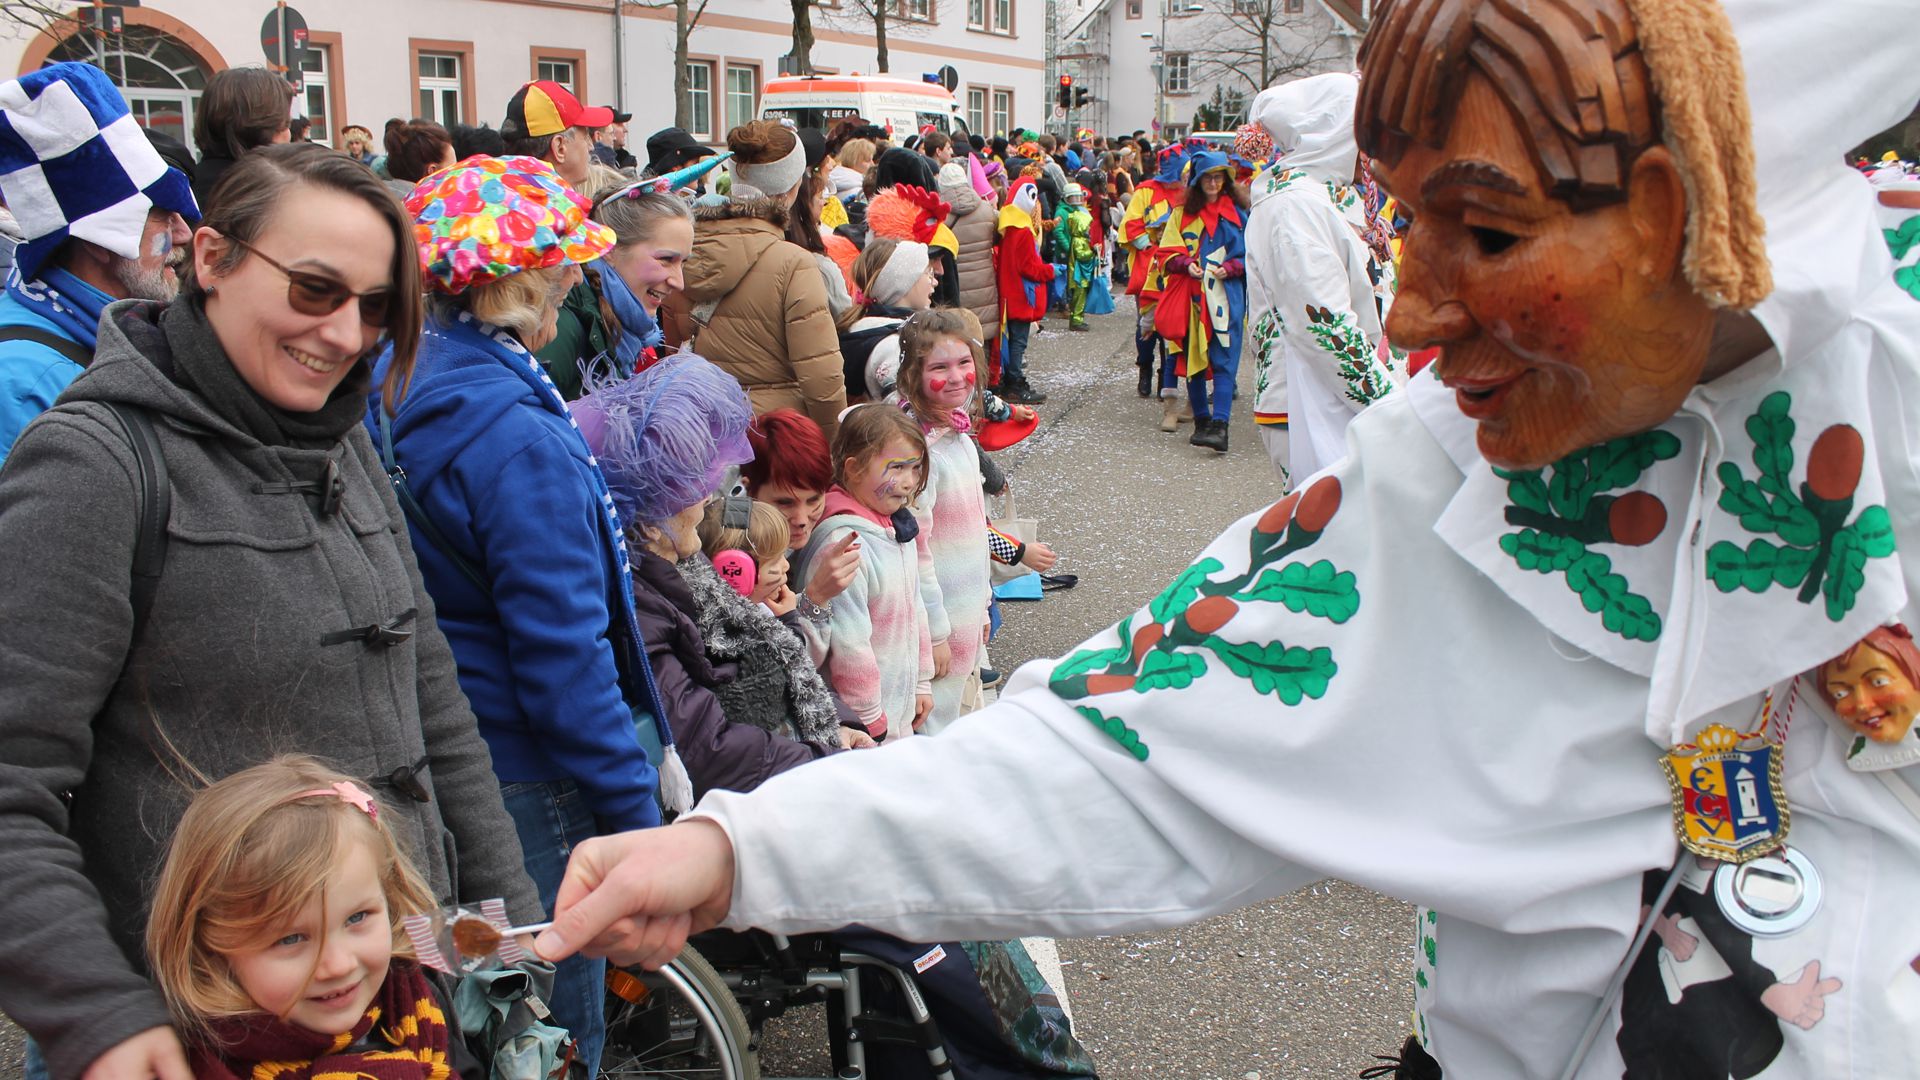 Süßes für die kleinen Besucher hat unter anderem der Ettlinger Carneval Verein dabei.